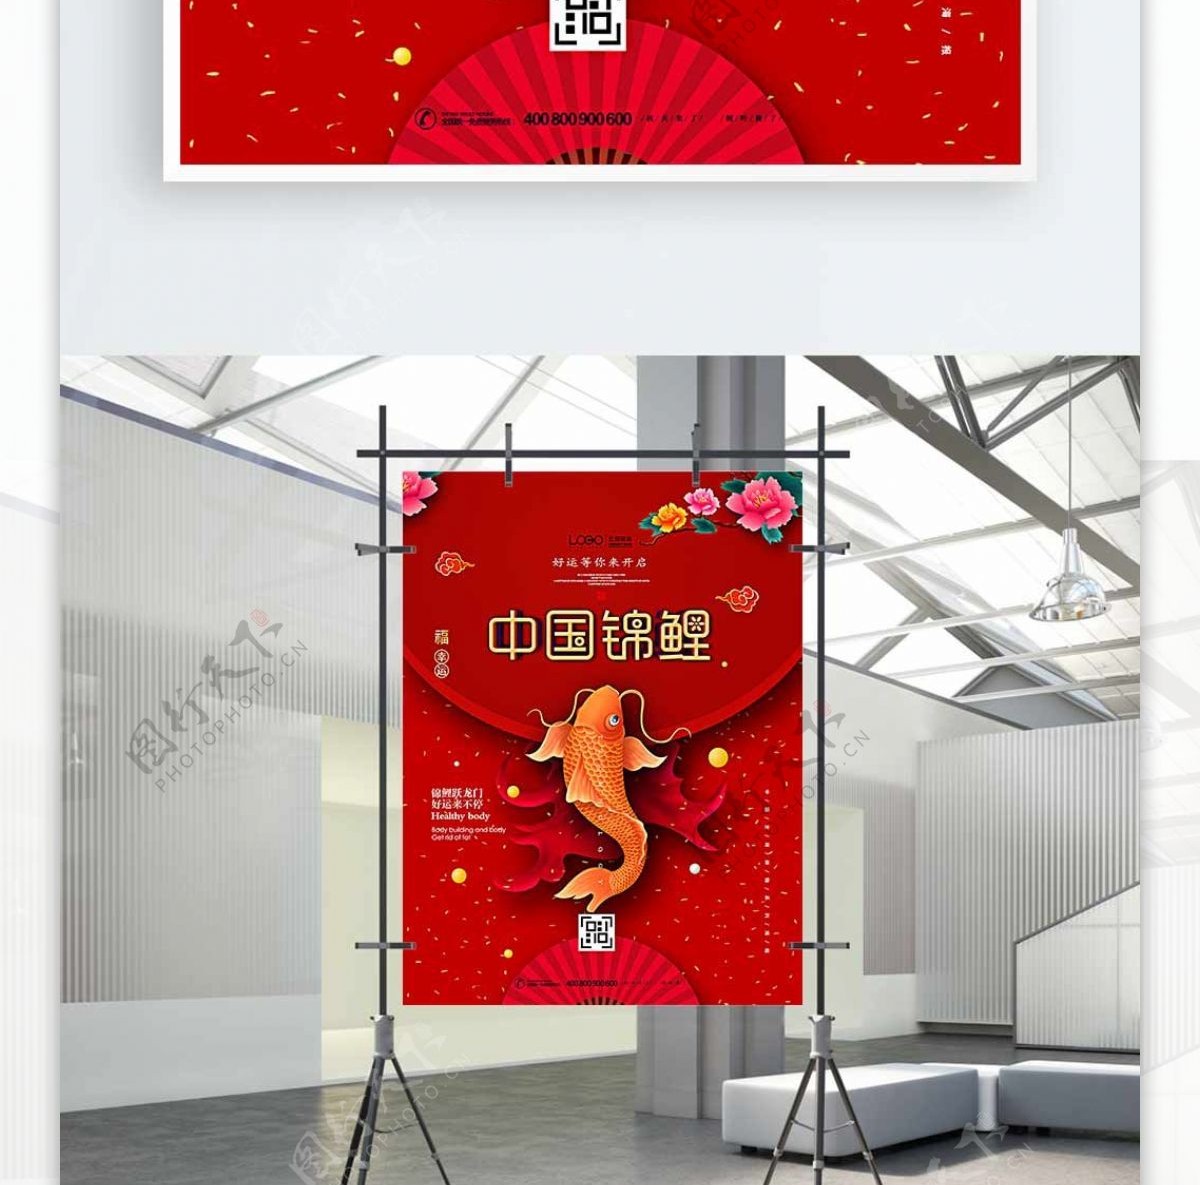 中国风锦鲤宣传创意喜庆海报